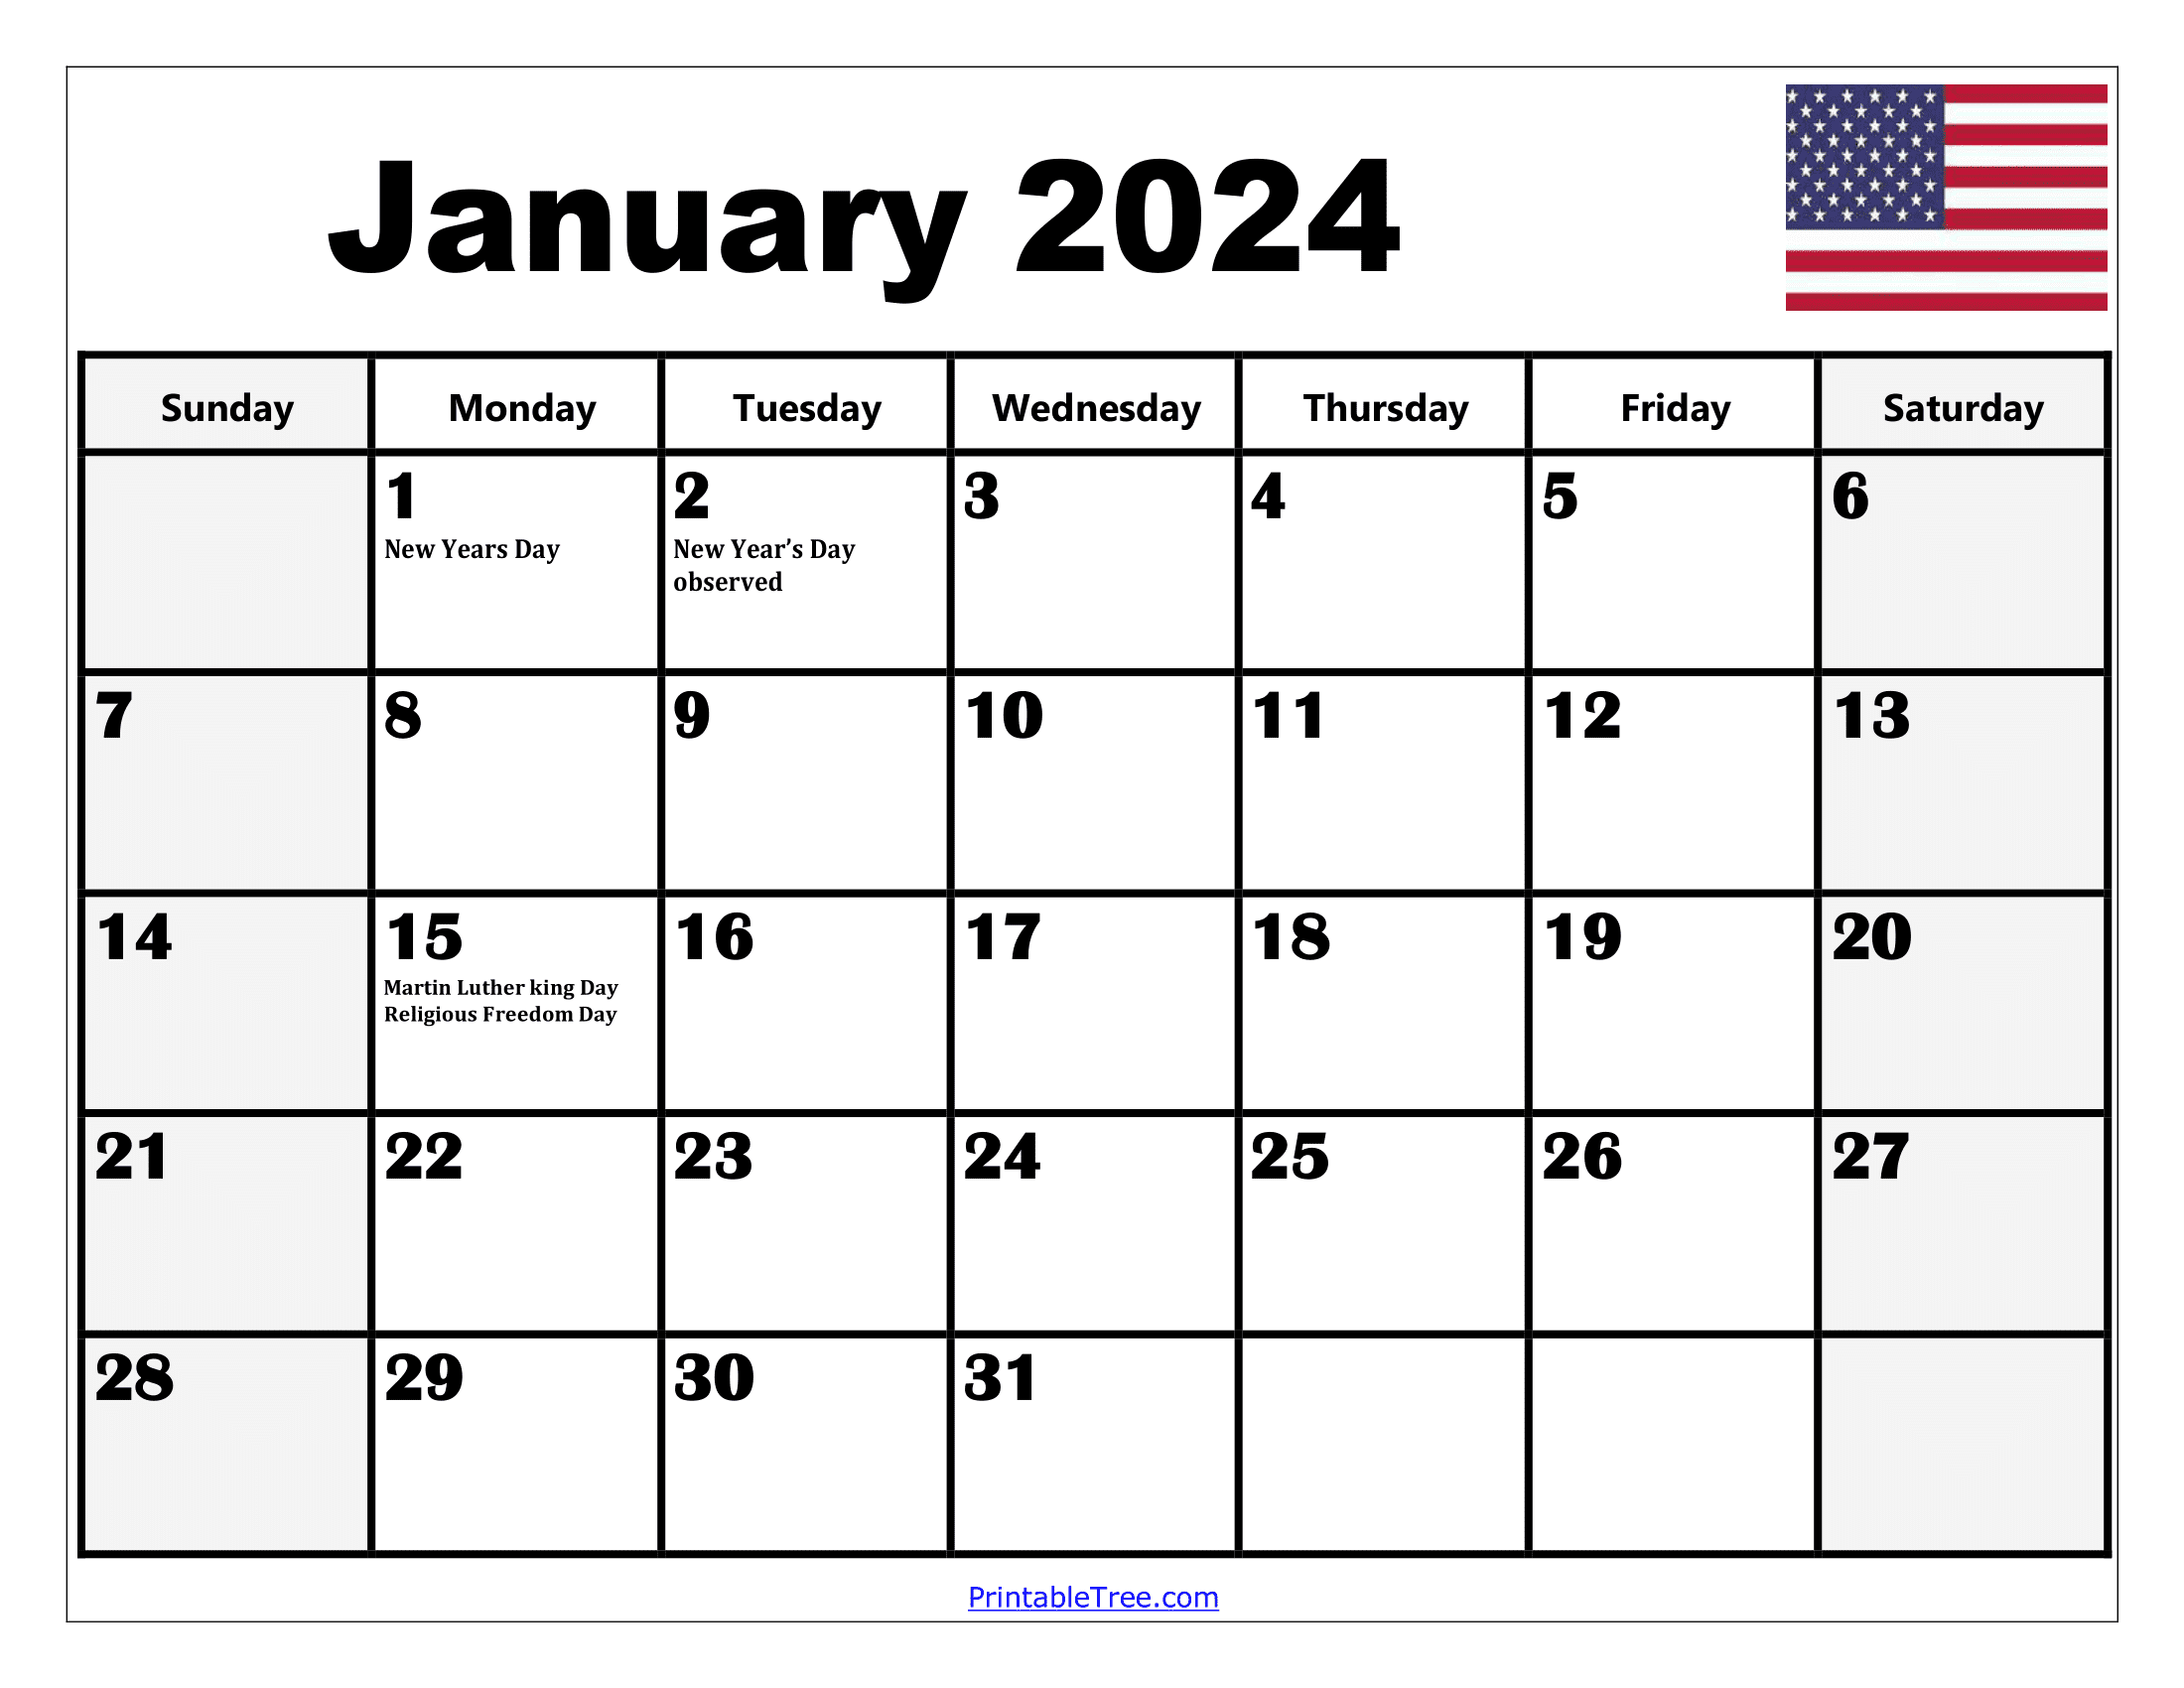 2024 Holiday Calendar Days Free Download Nov 2024 Calendar - Free Printable 2024 Calendar With Holidays Monthly